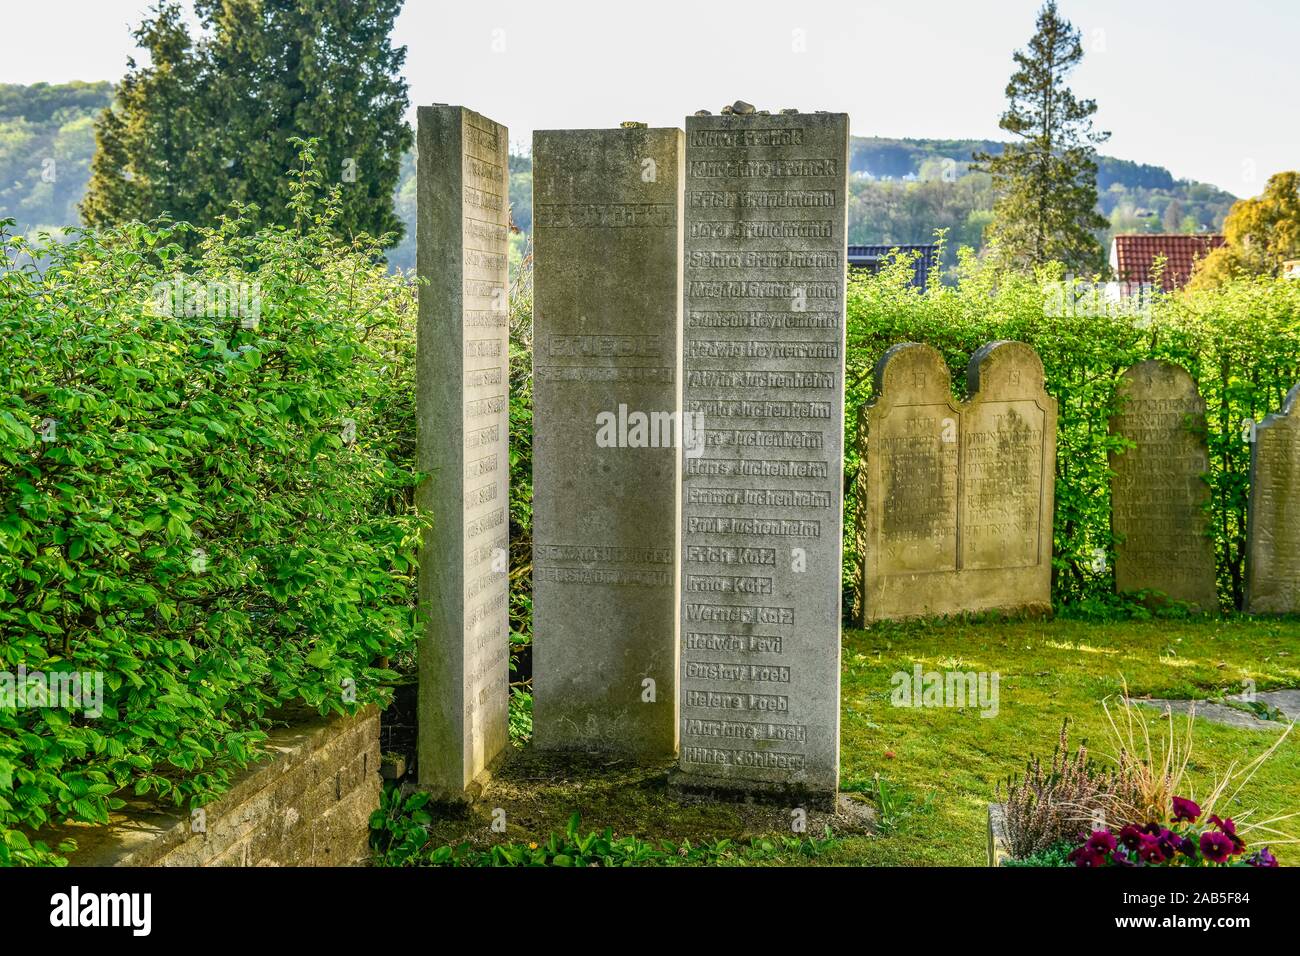 Gedenksteine, Olocausto, Alter Jüdischer Friedhof, Winterberg, Vlotho, Kreis Herford, Nordrhein-Westfalen, Deutschland Foto Stock